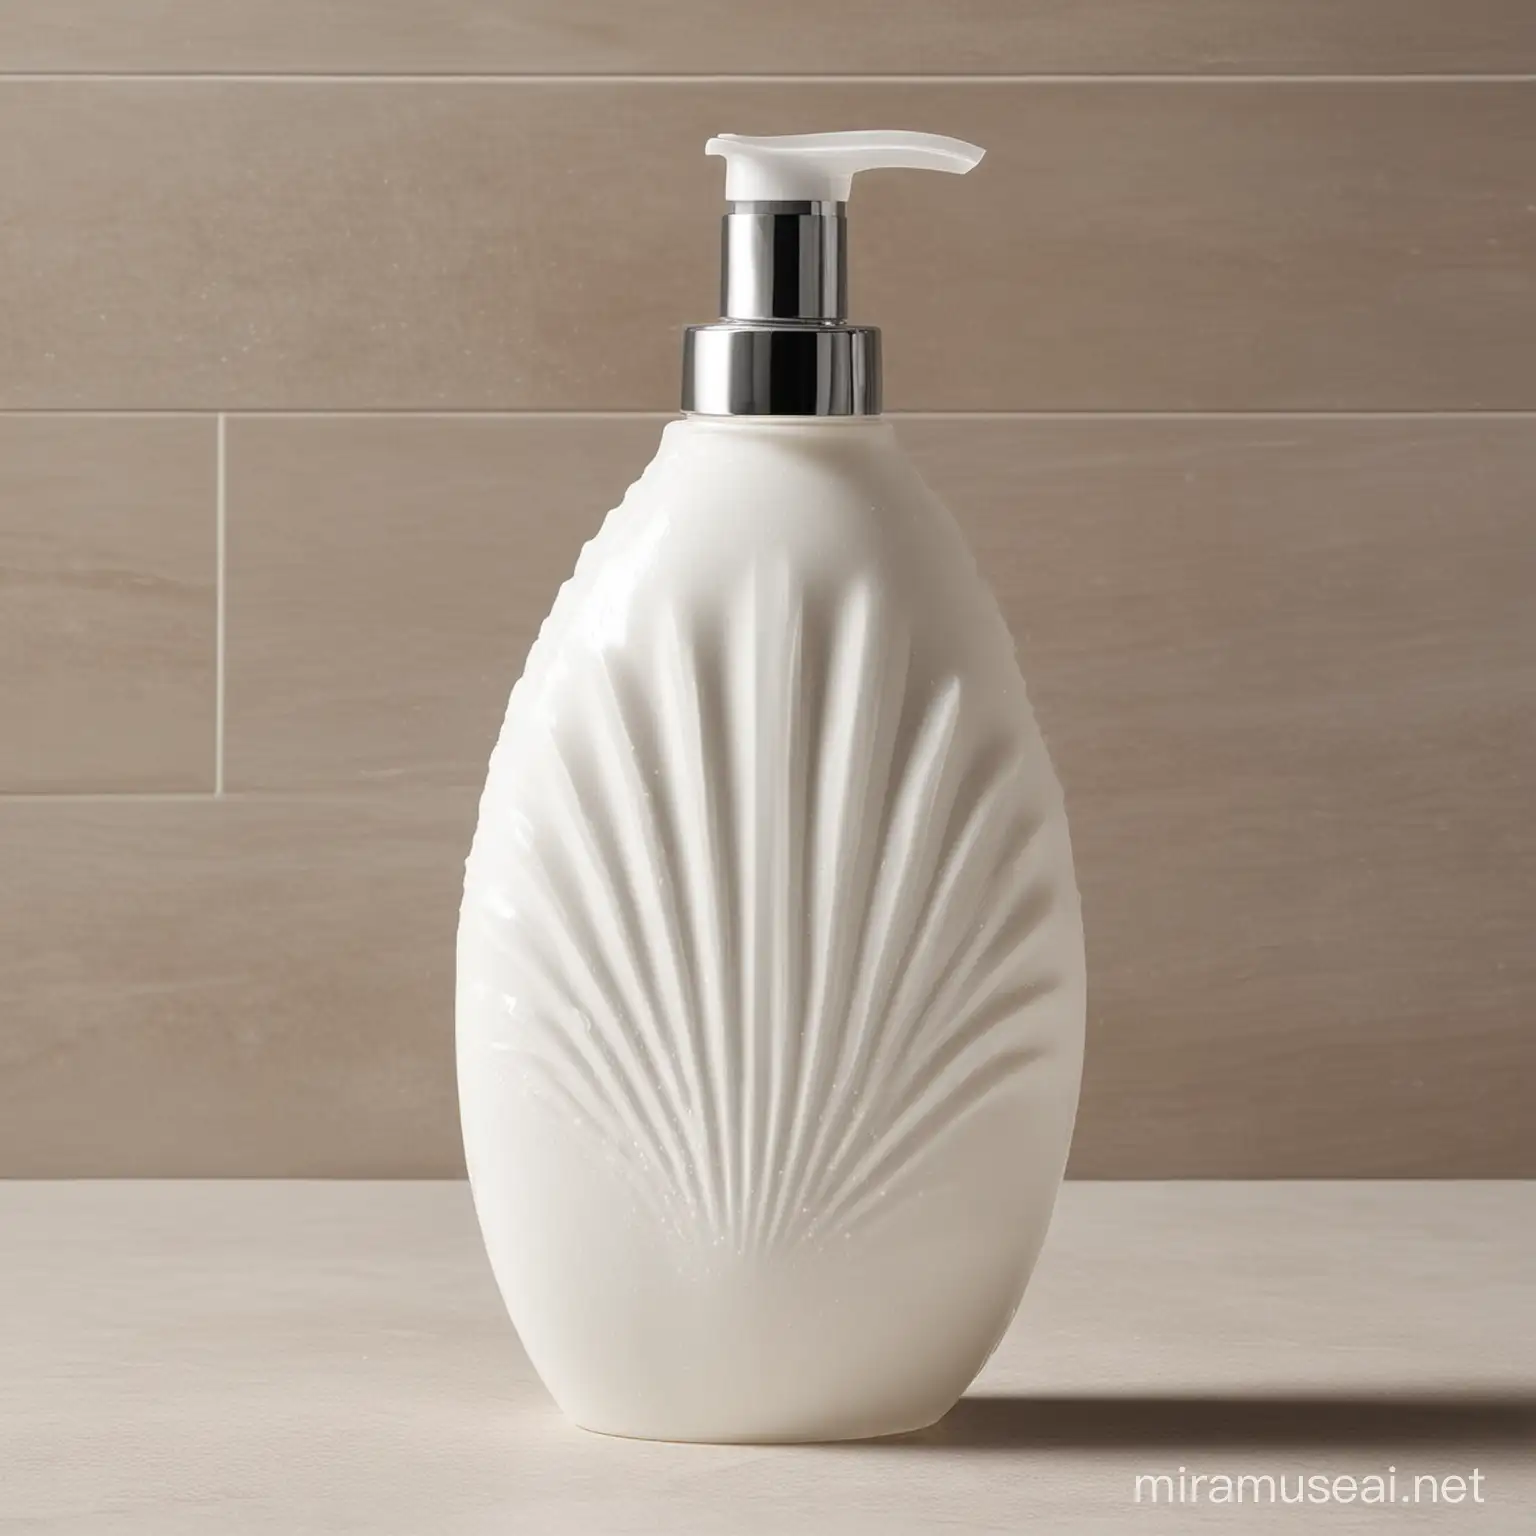 Vibrant Shell Shower Gel Design Seasideinspired Bath Product